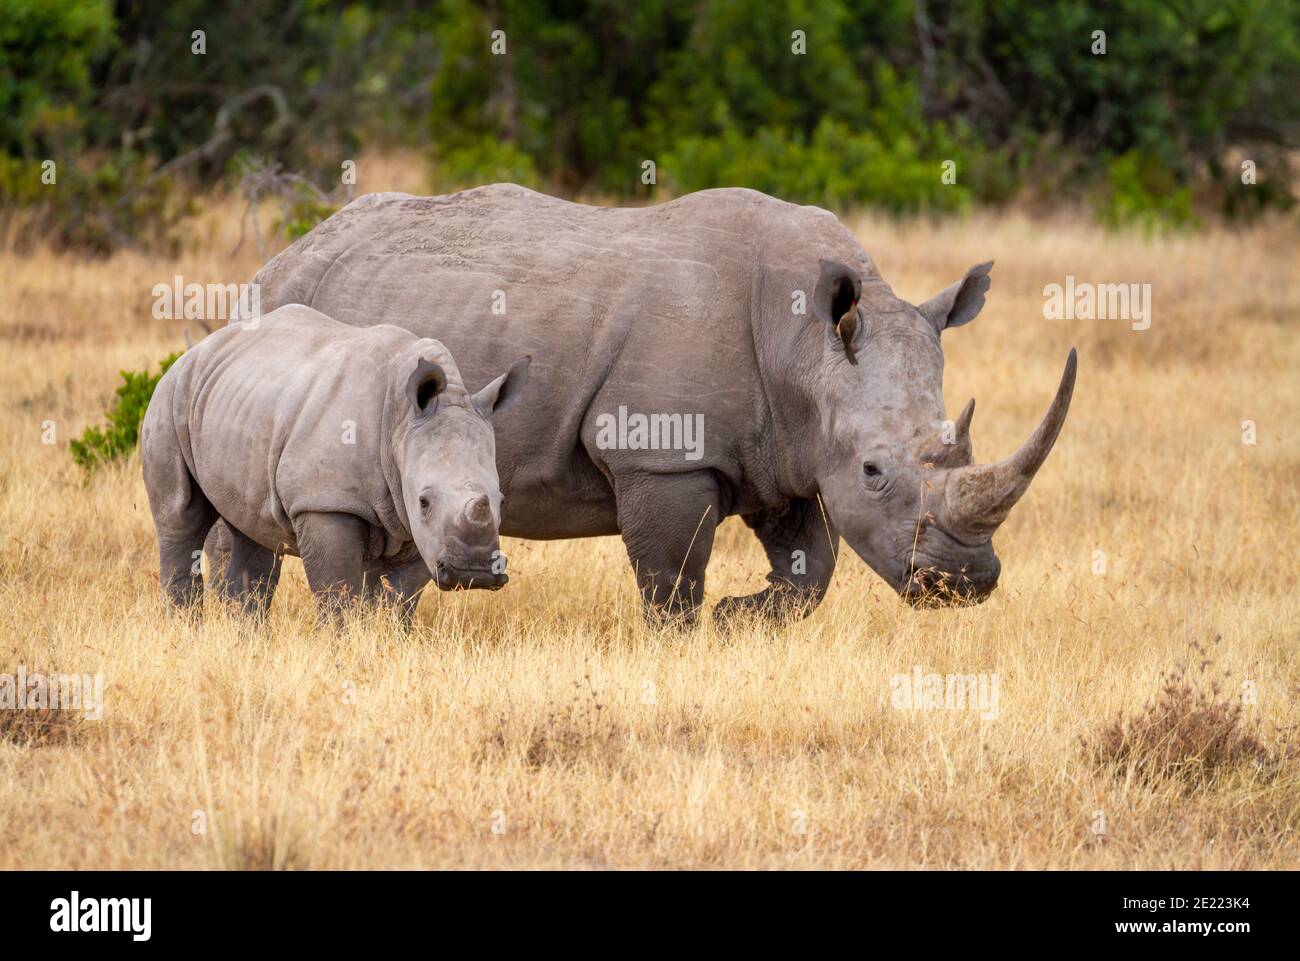 Vache blanche de rhinocéros du sud avec veau (Ceratotherium simum) dans OL Pejeta Conservancy, Kenya, Afrique. Espèces de rhinocéros africains menacées Banque D'Images